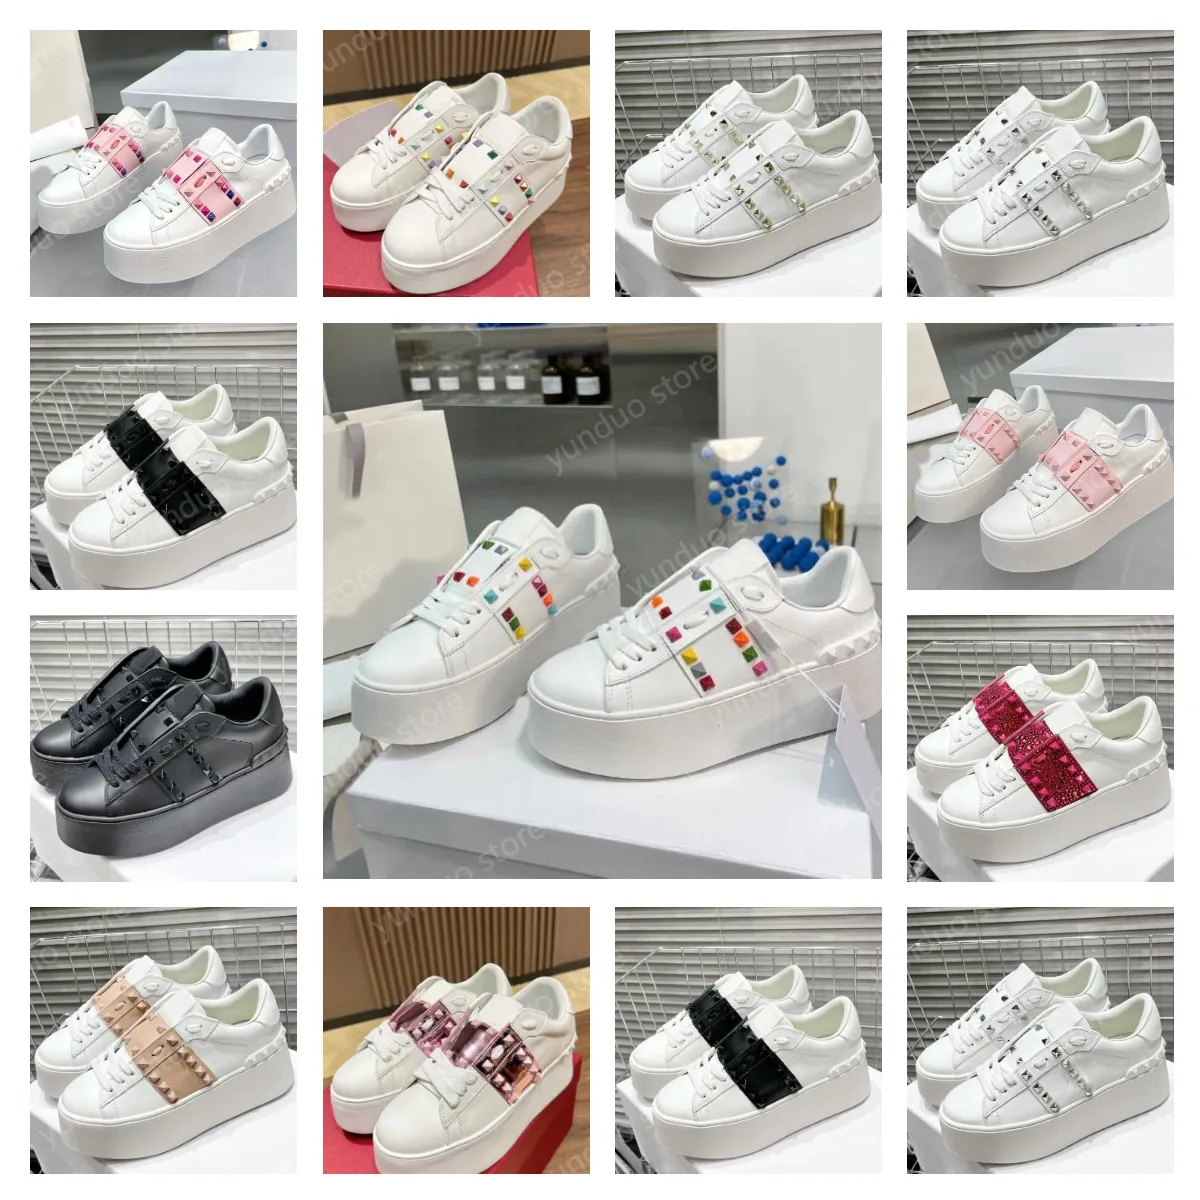 Wen but najwyższej jakości amore jeden stadnina niskie trampki Untitled Sneaker skórzane kobiety unisex trampki białe projektant platformy Sneaker